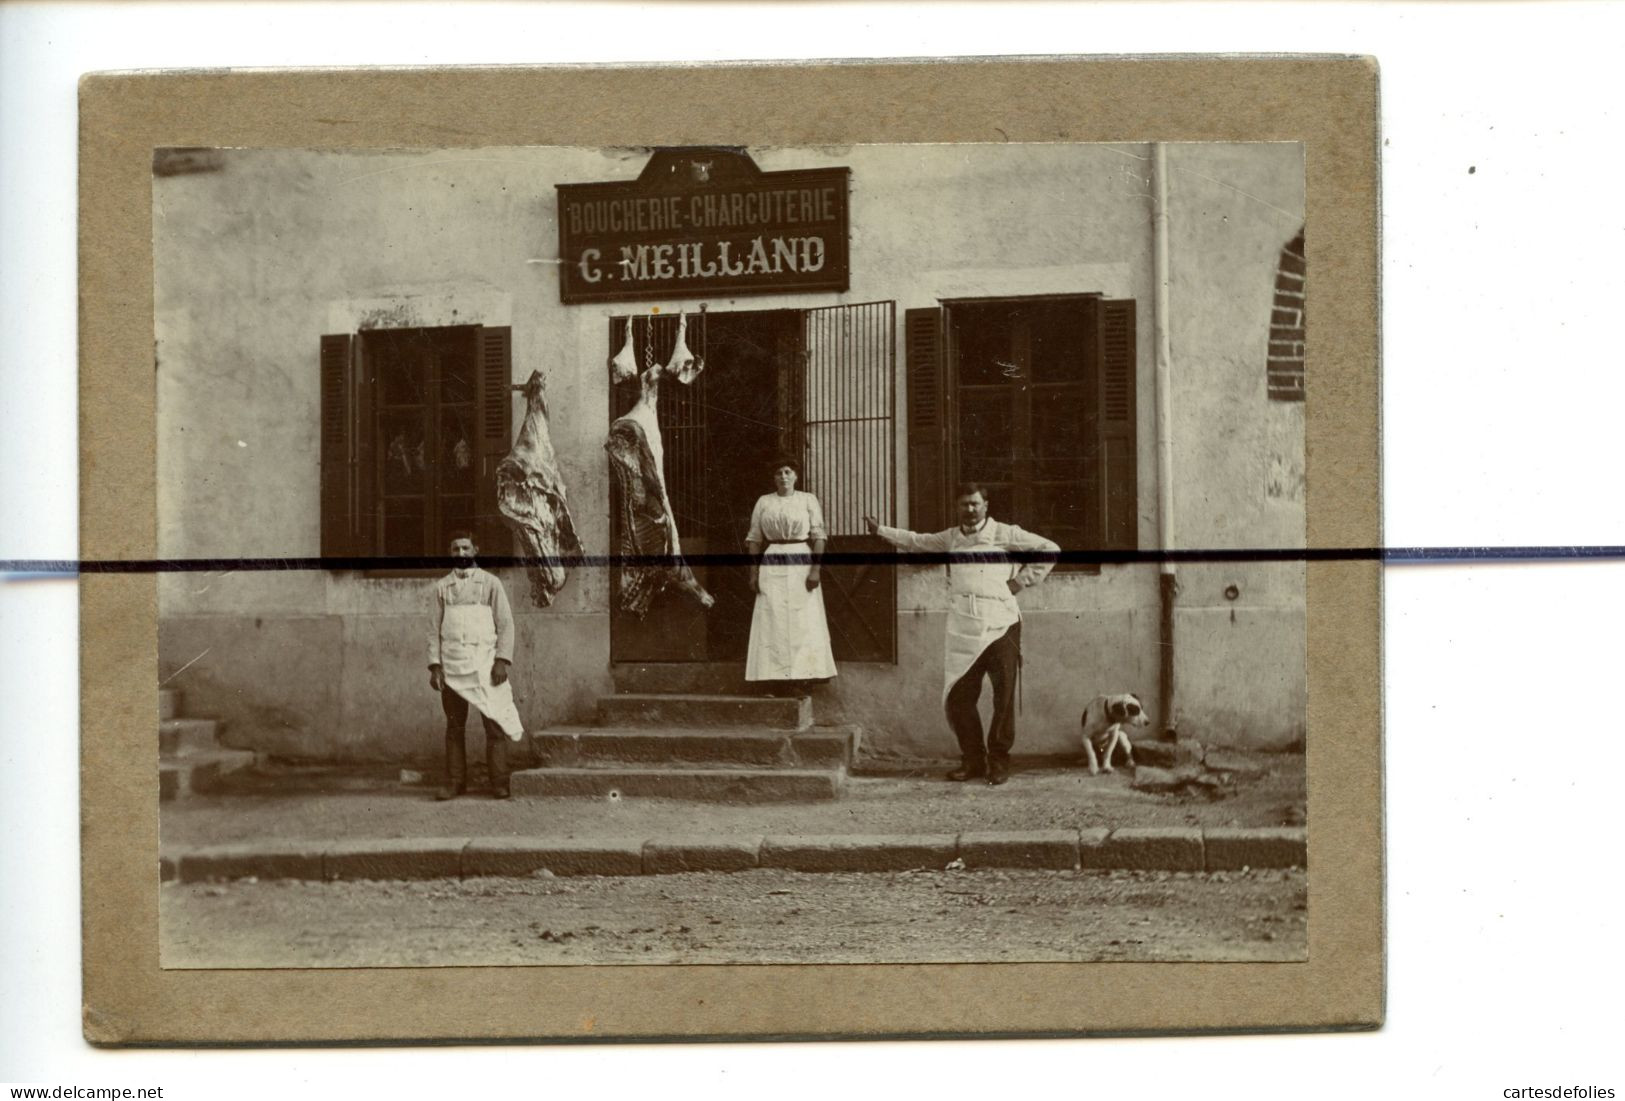 PHOTOGRAPHIE A Identifier. Devanture DE LA Boucherie Charcuterie C. MEILLAND . Personages Devant L'etablissement - Plaatsen